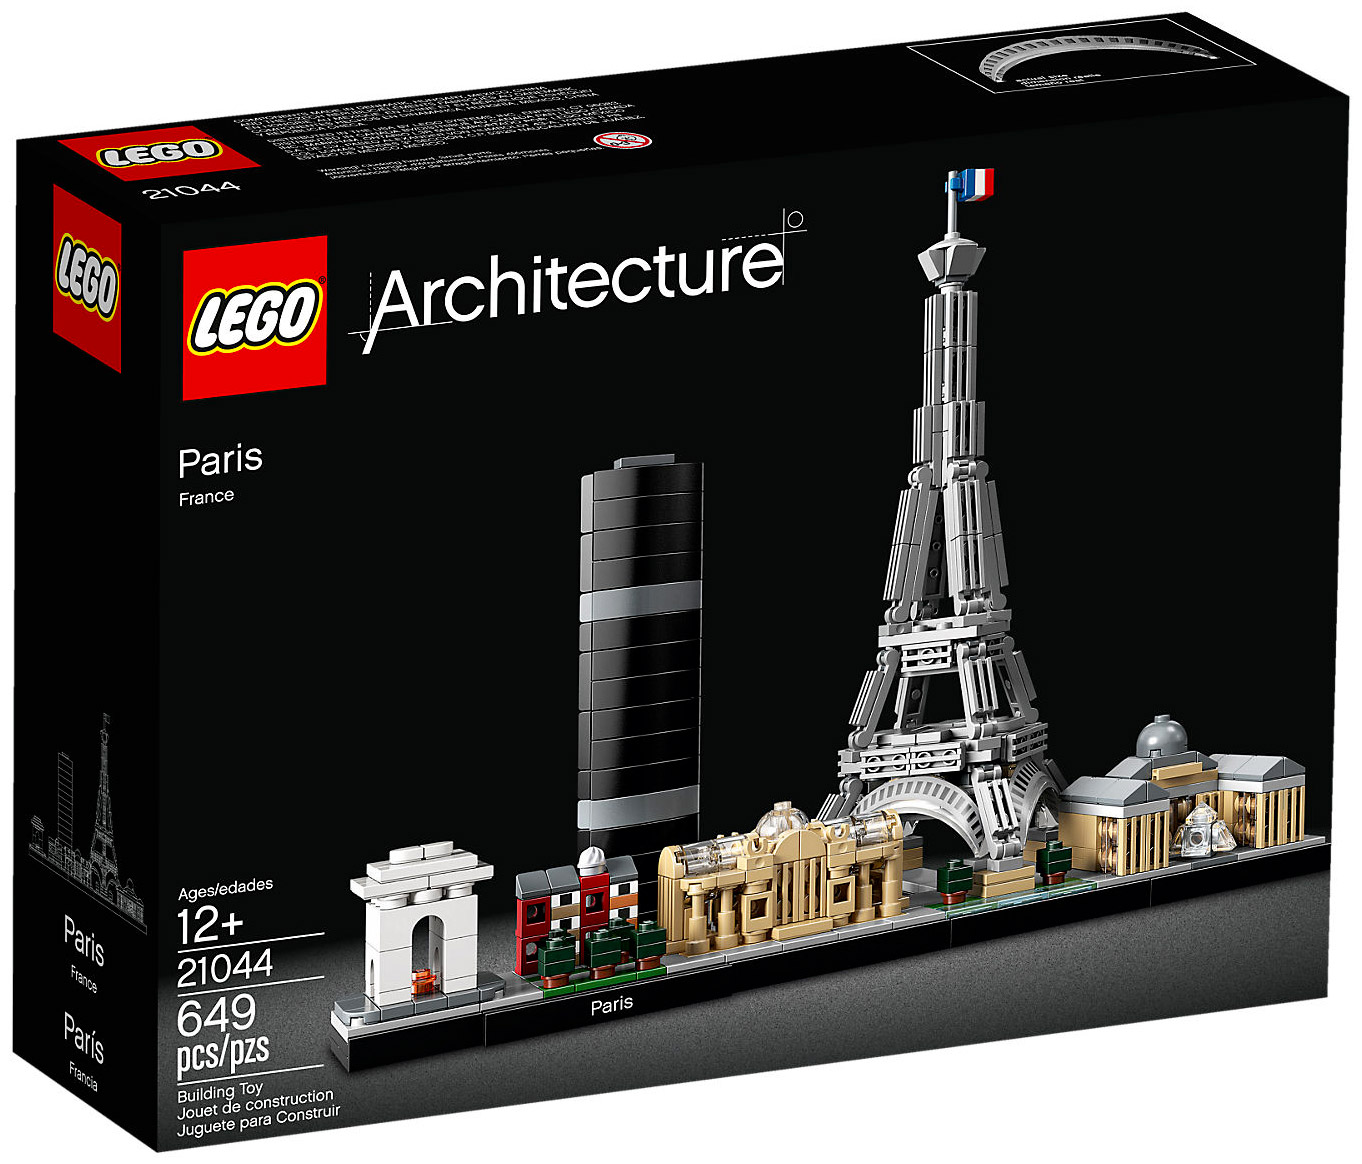 LEGO 21044 pas cher, Paris, France